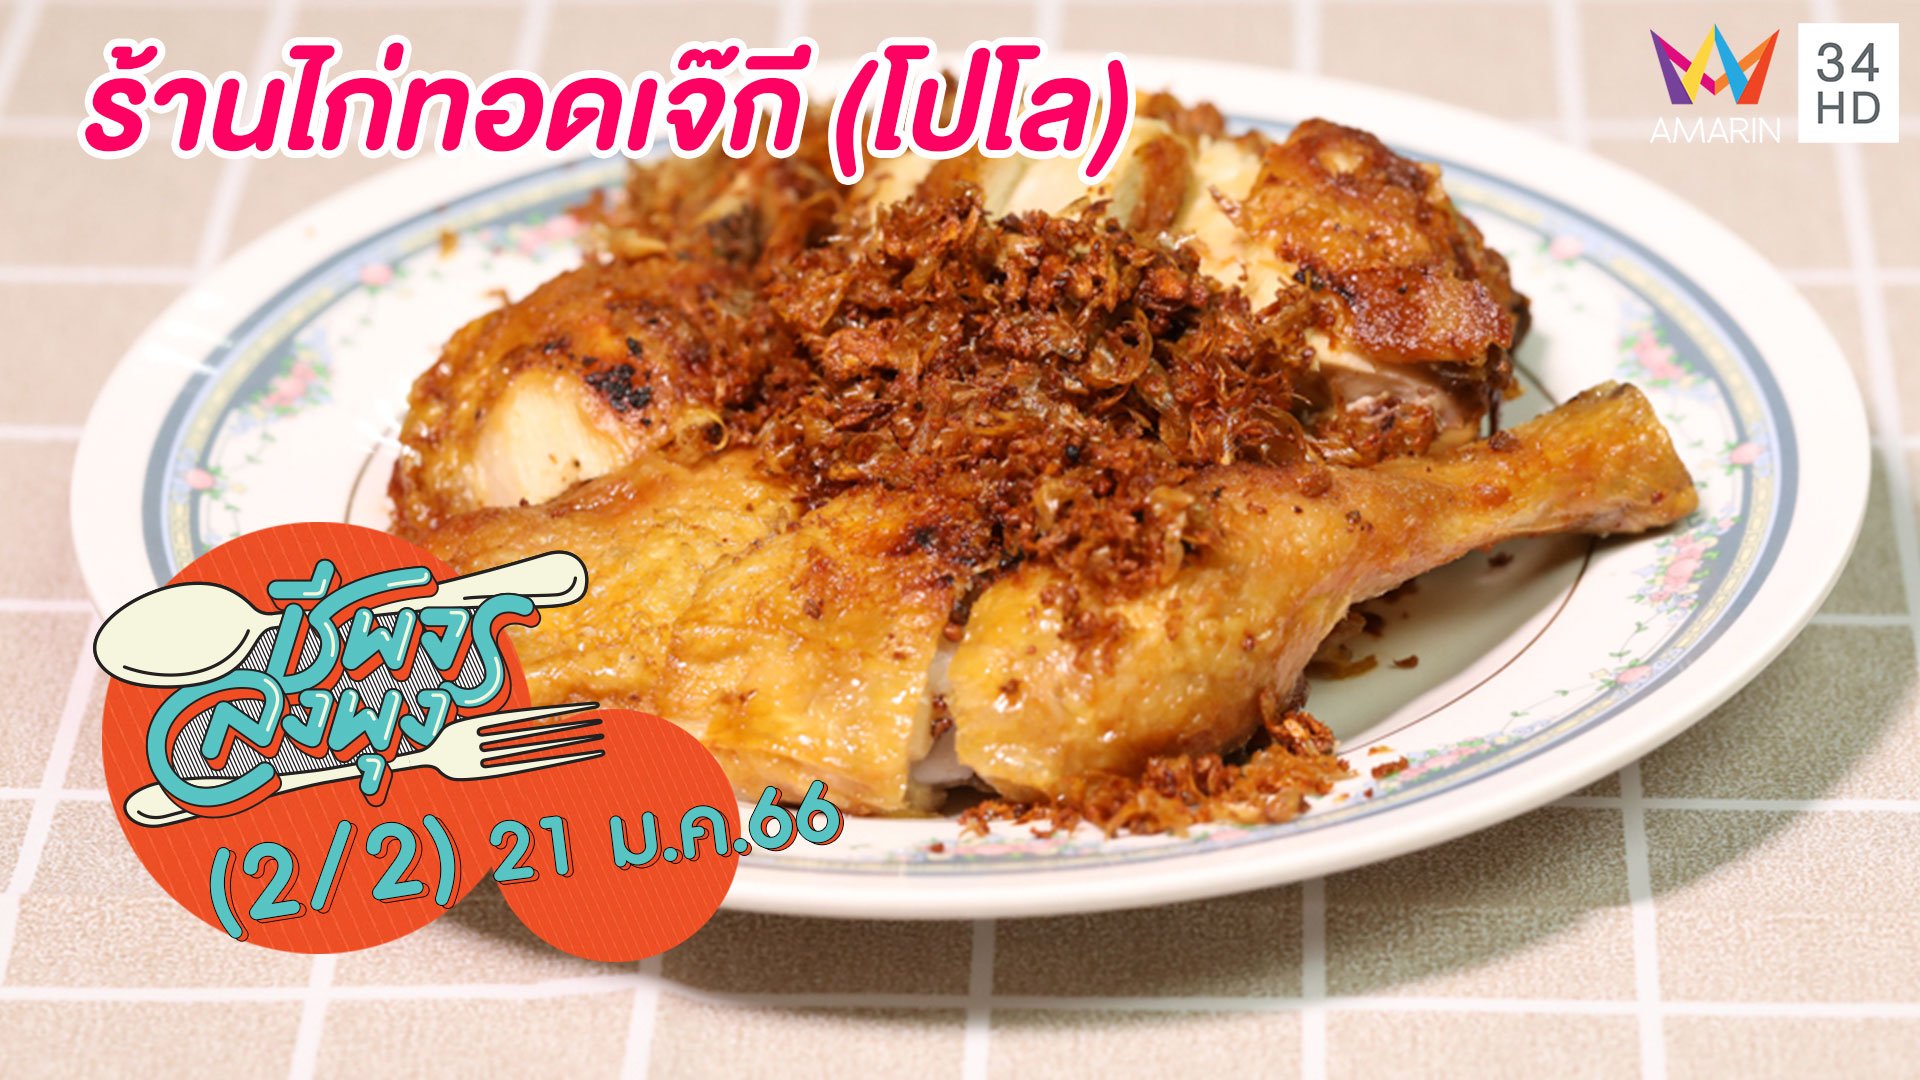 ไก่ทอดหนังกรอบ เนื้อนุ่มฉ่ำ @ร้านไก่ทอดเจ๊กี (โปโล) | ชีพจรลงพุง | 21 ม.ค. 66 (2/2) | AMARIN TVHD34